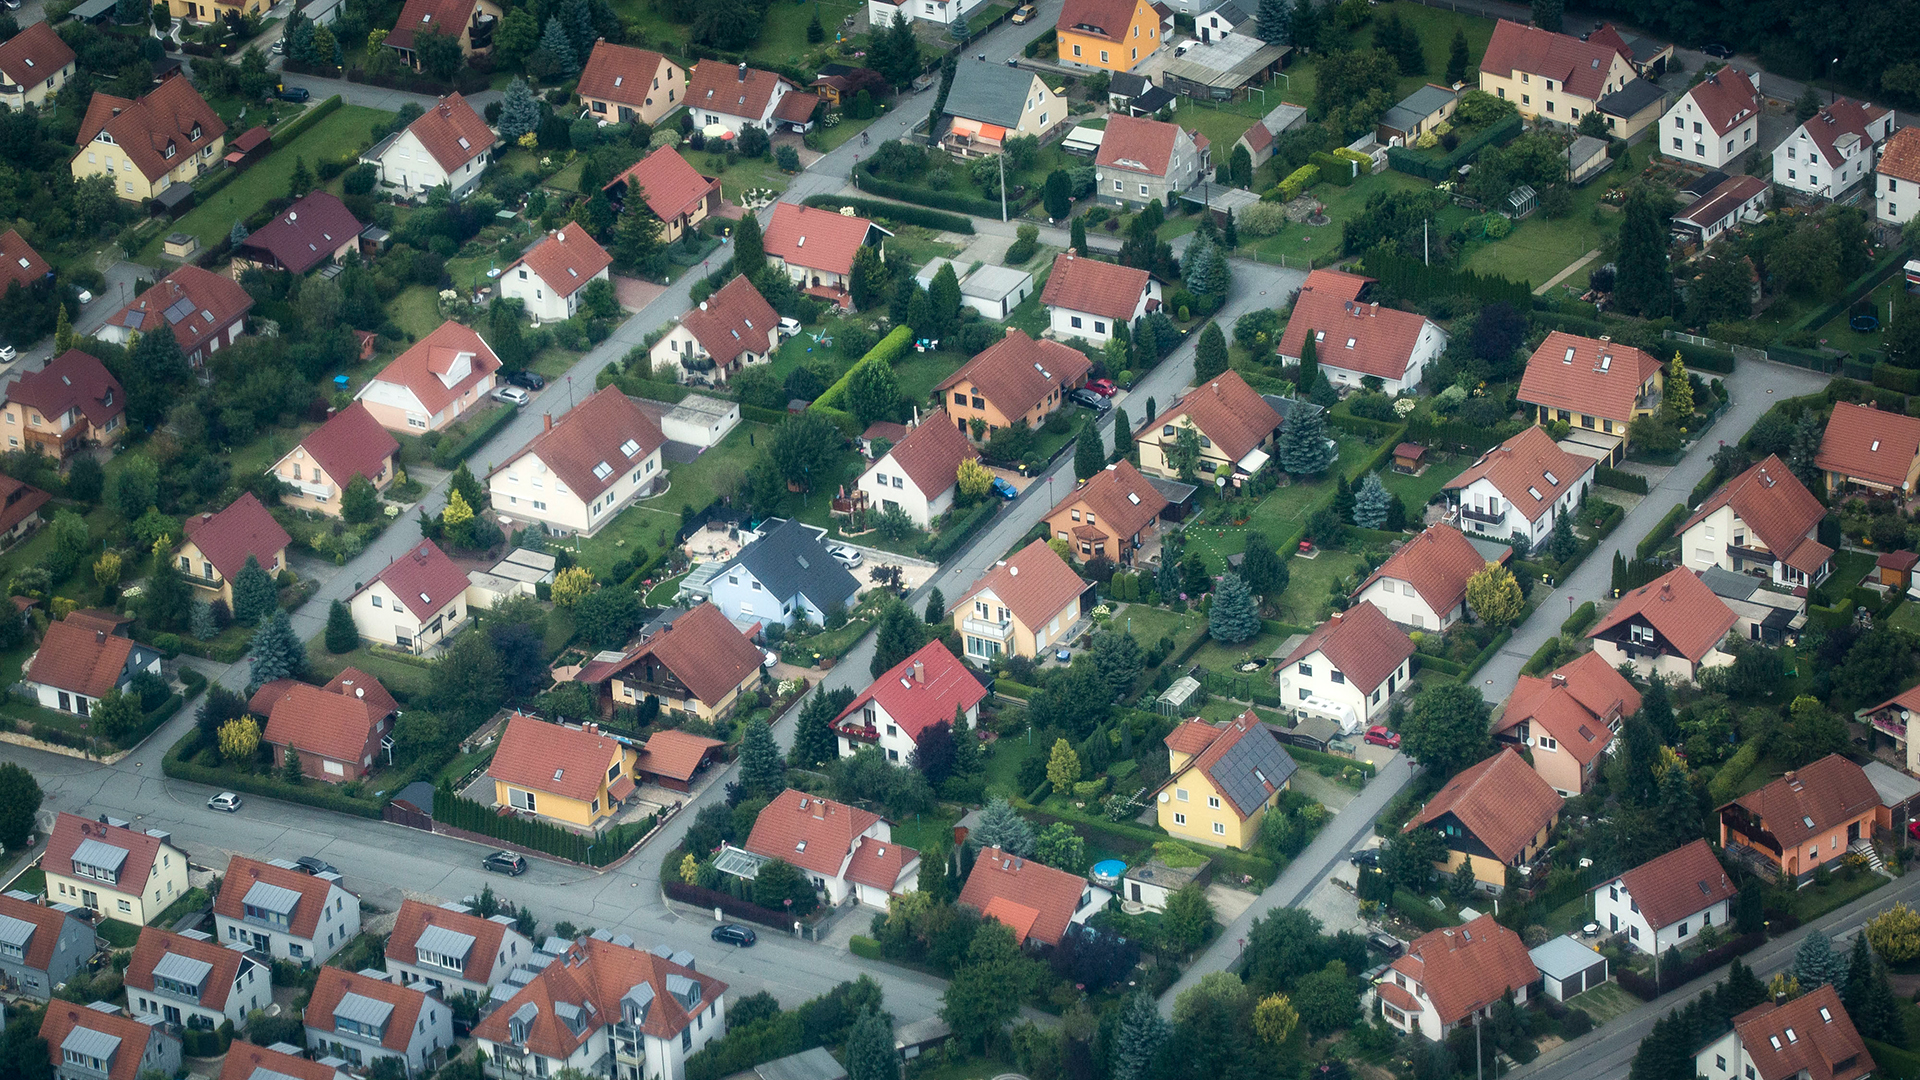 Luftaufnahme einer Vorstadtsiedlung bei Dresden | picture alliance / photothek